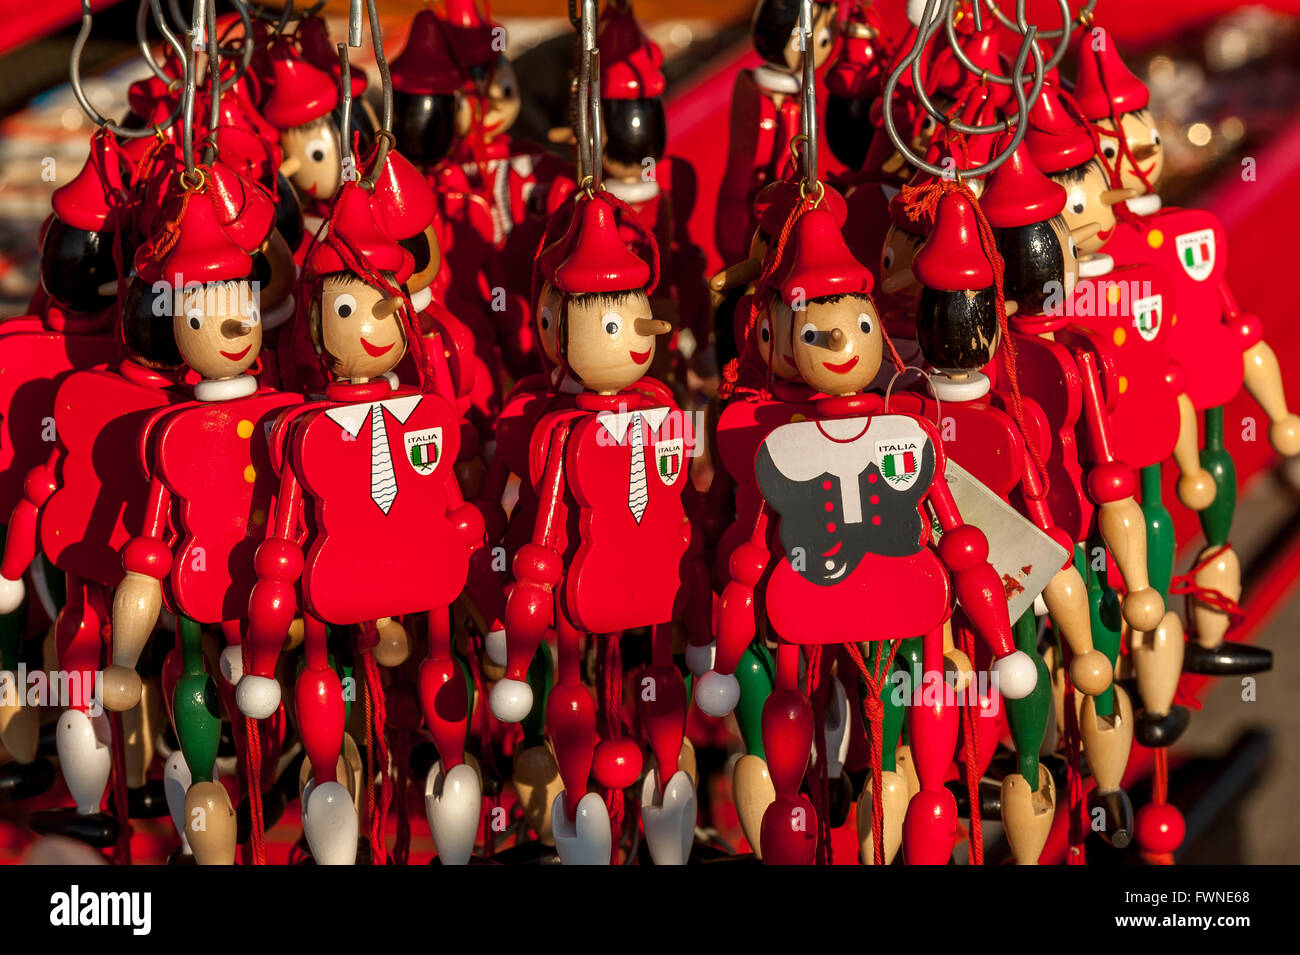 Los títeres de Pinocho a la venta como recuerdos turísticos de Florencia. Foto de stock